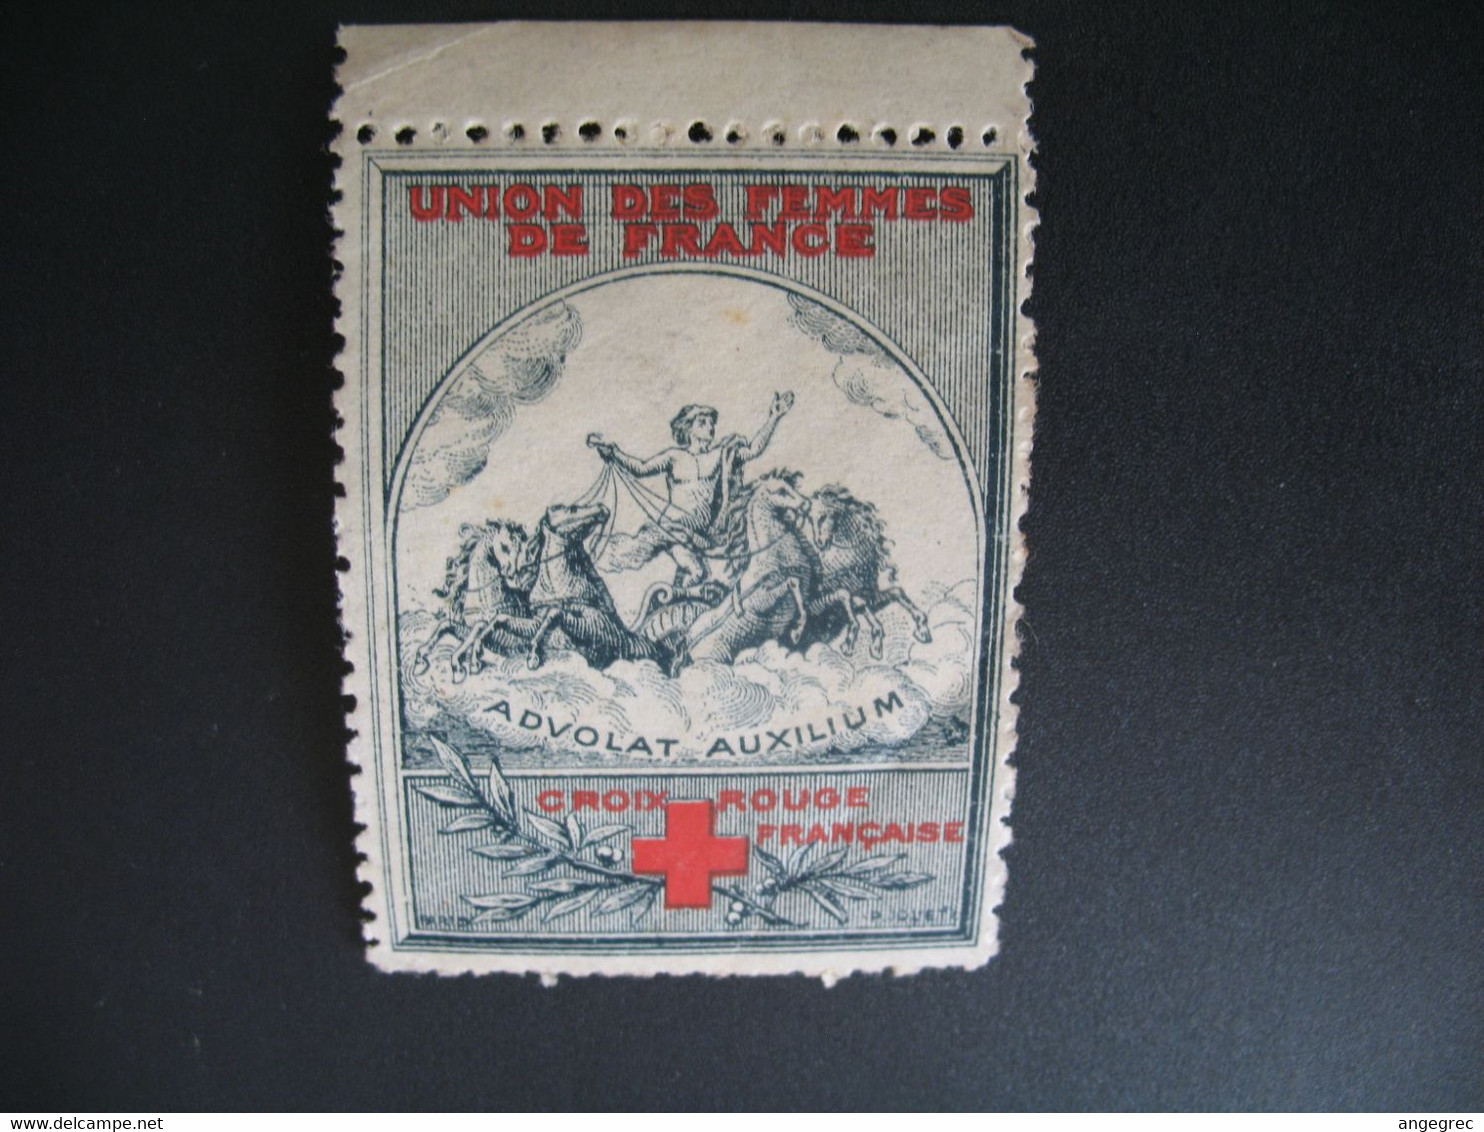 Vignette Militaire Delandre Guerre De 1914 - Croix Rouge - Red Cross - Croix Rouge Française   Advolat Auxilium - Croix Rouge